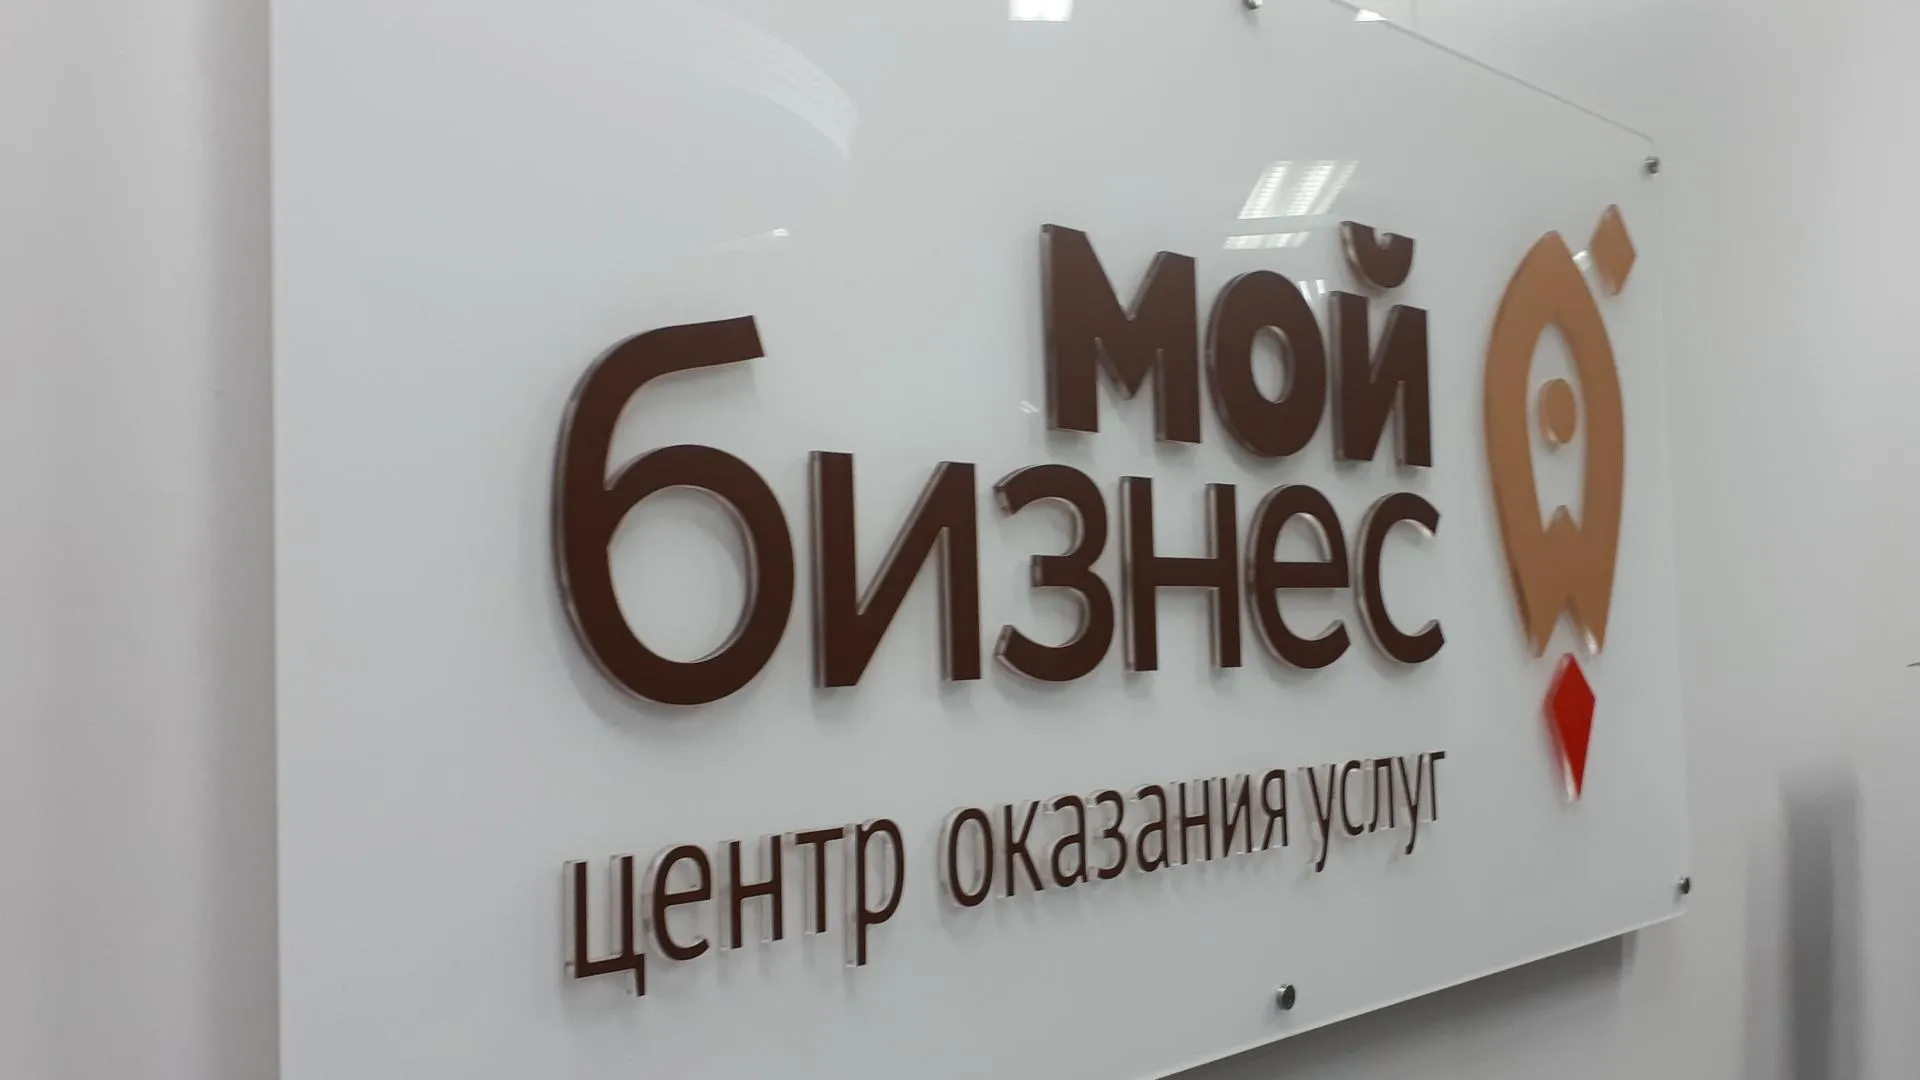 Минченко отметил работу подмосковных властей в сфере цифровизации